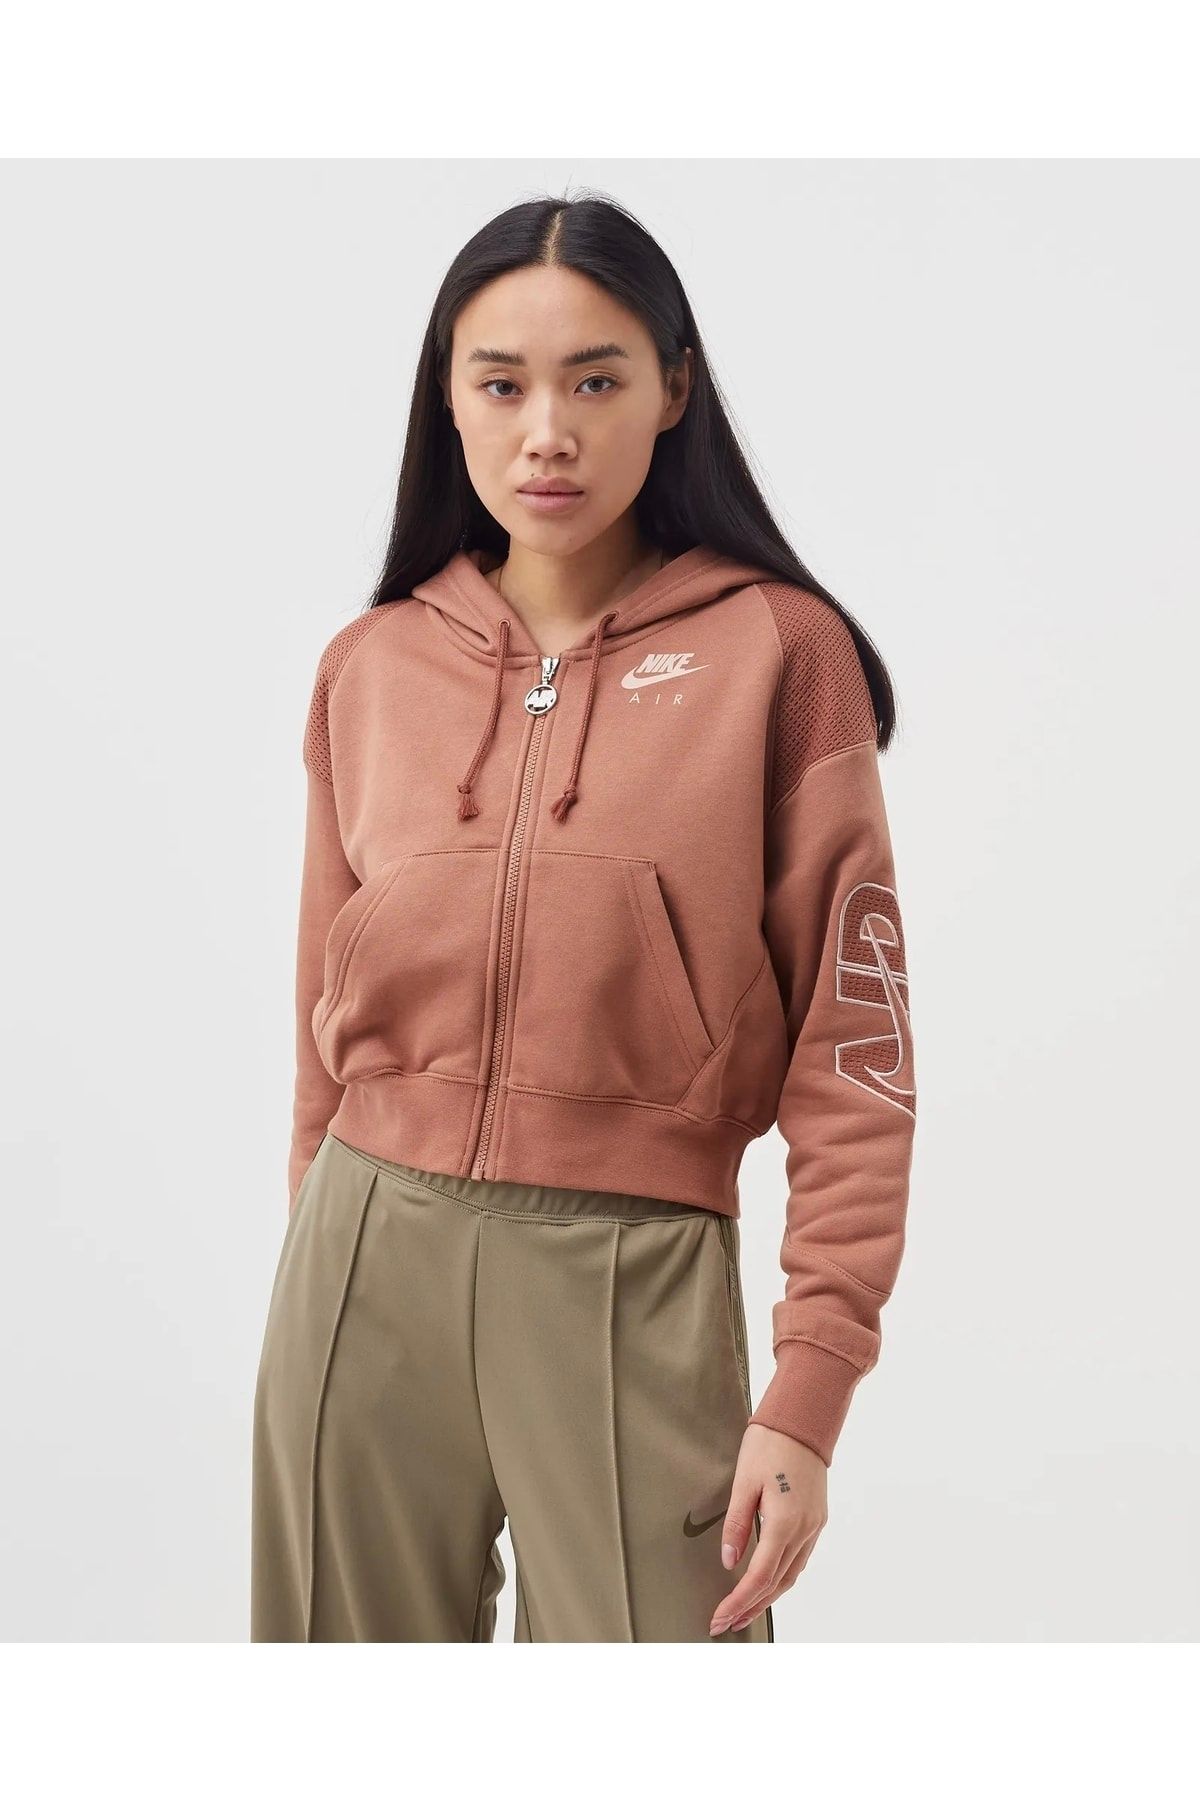 Nike Sportswear Femme Women's Brown Sweatshirt - Trendyol